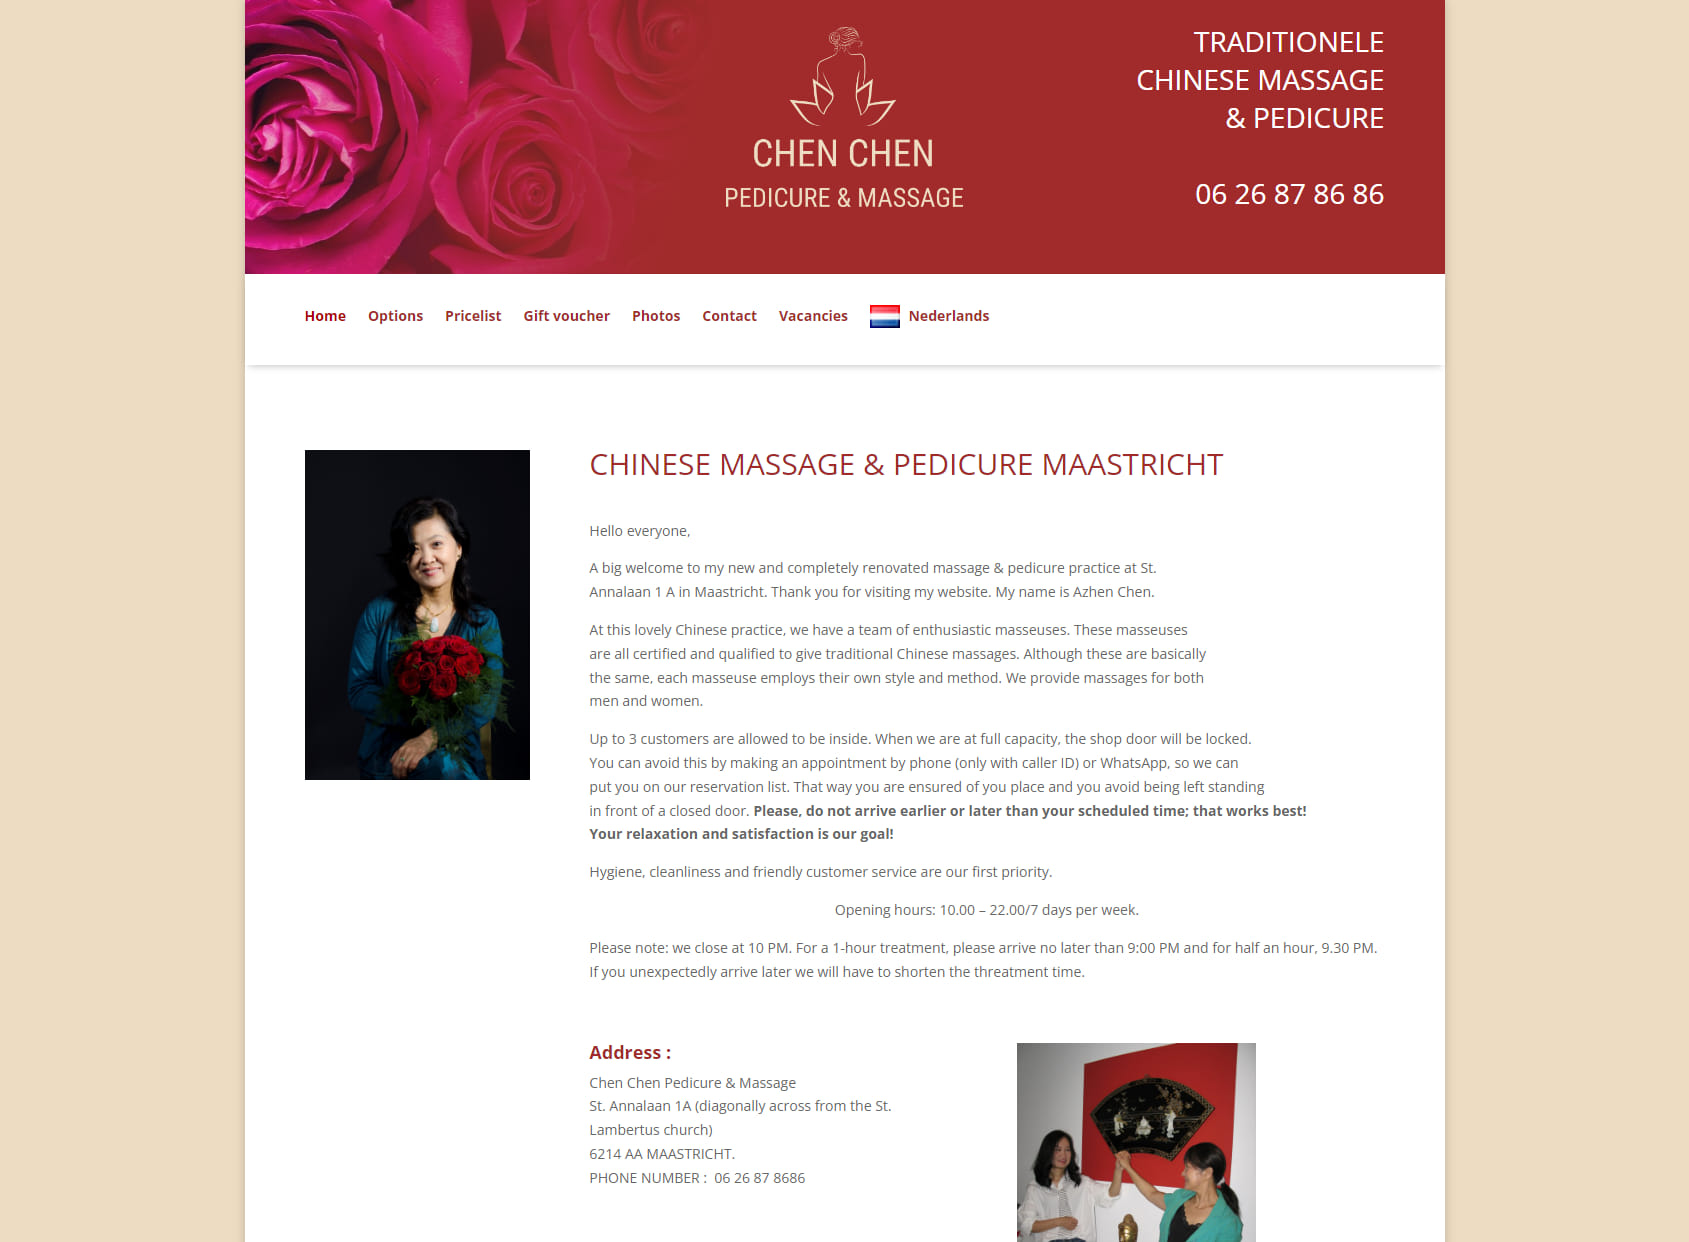 Chen Chen Massage & Pedicure